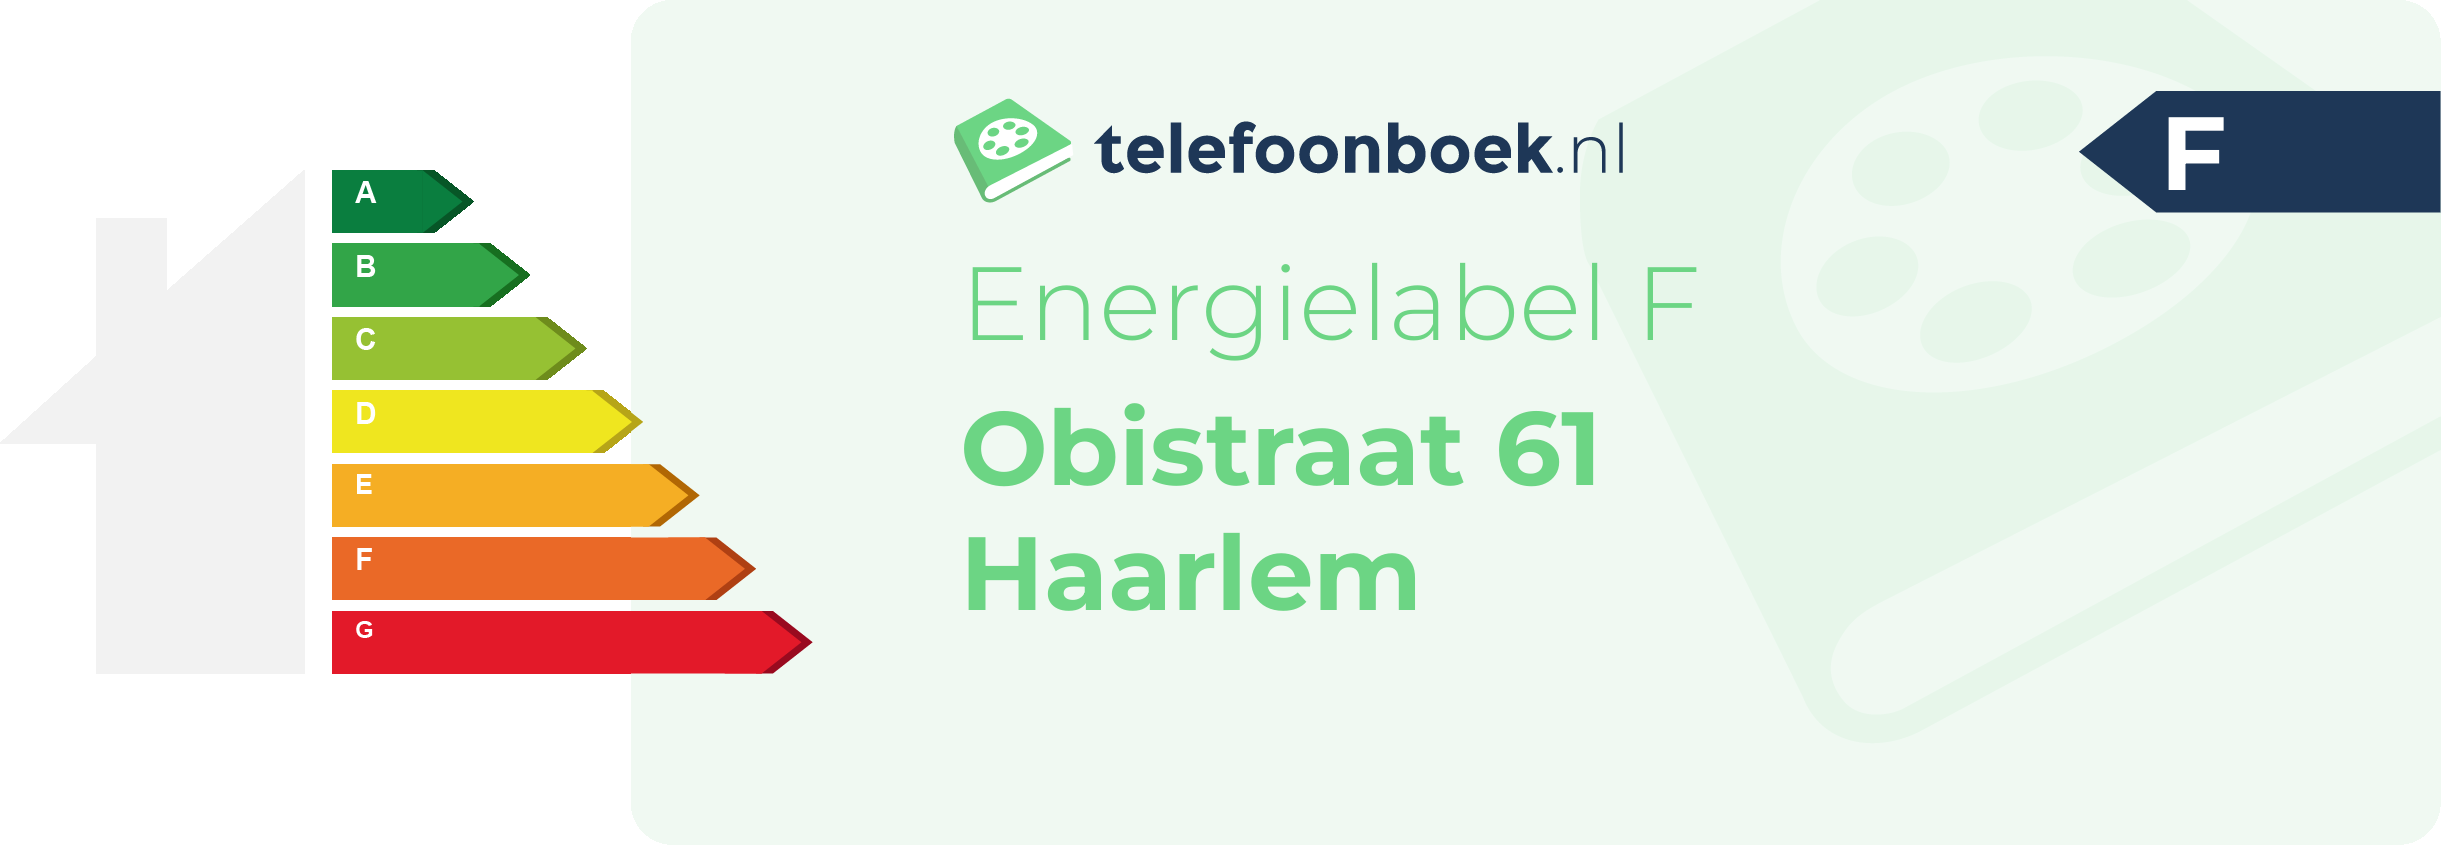 Energielabel Obistraat 61 Haarlem